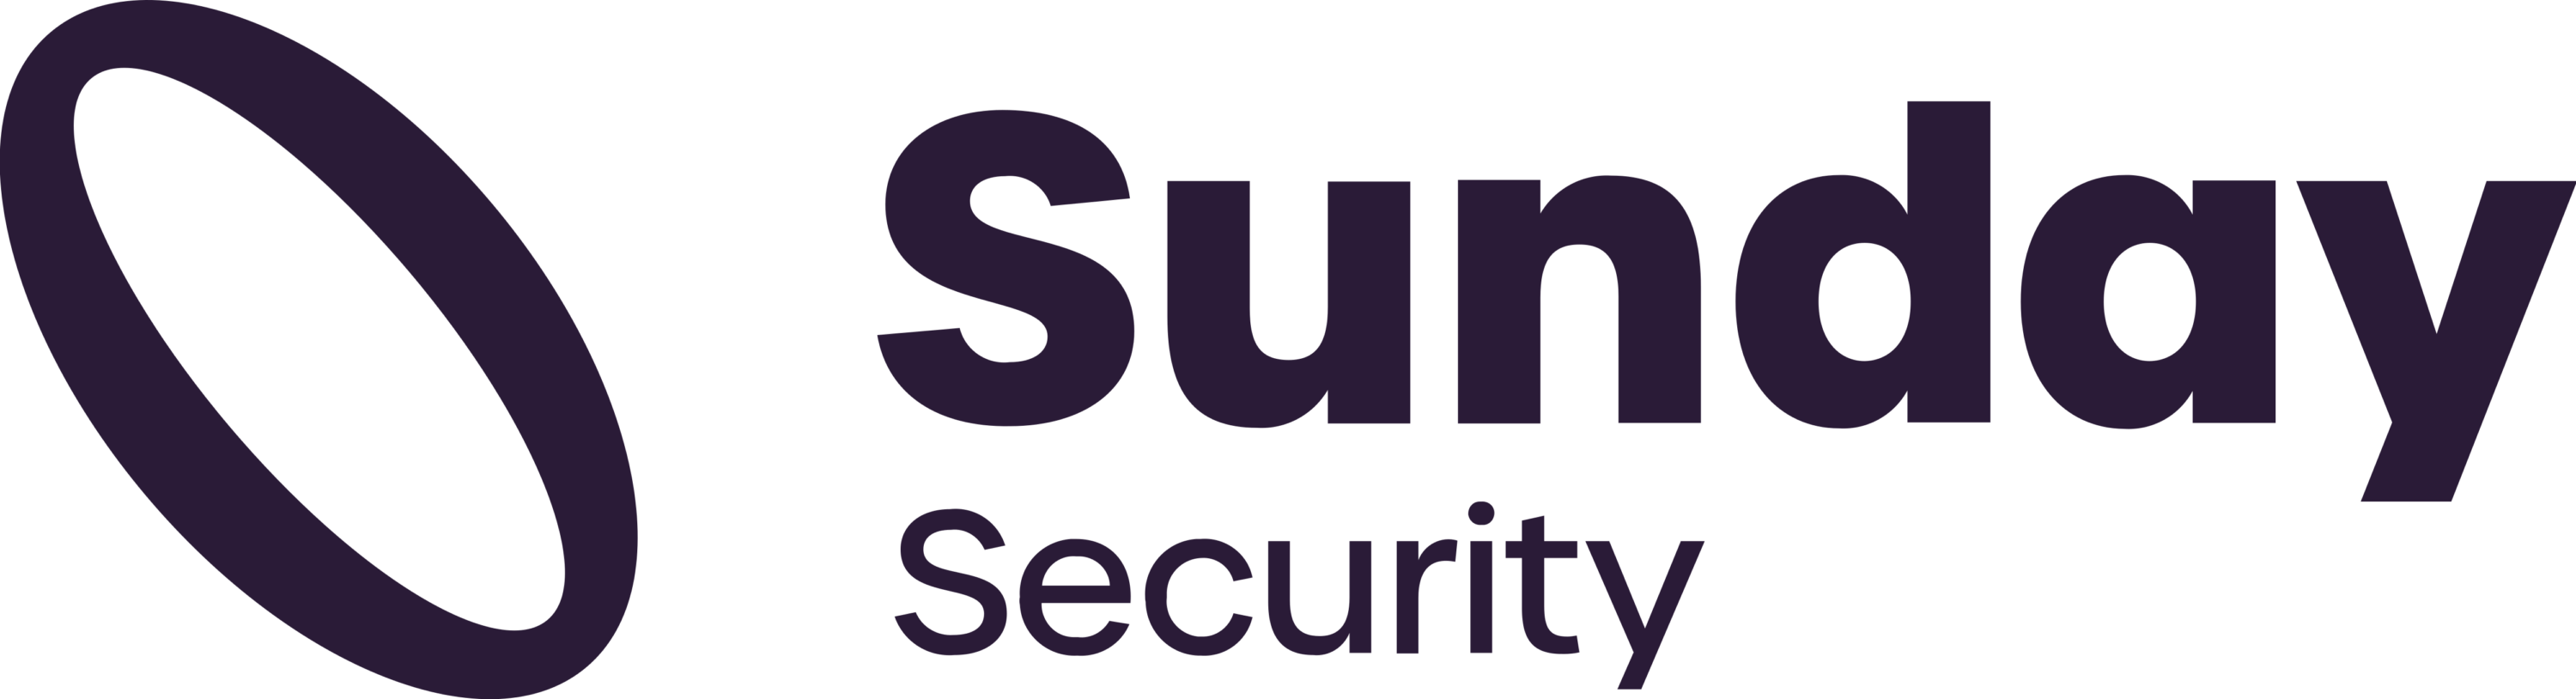 Sunday Security Logo